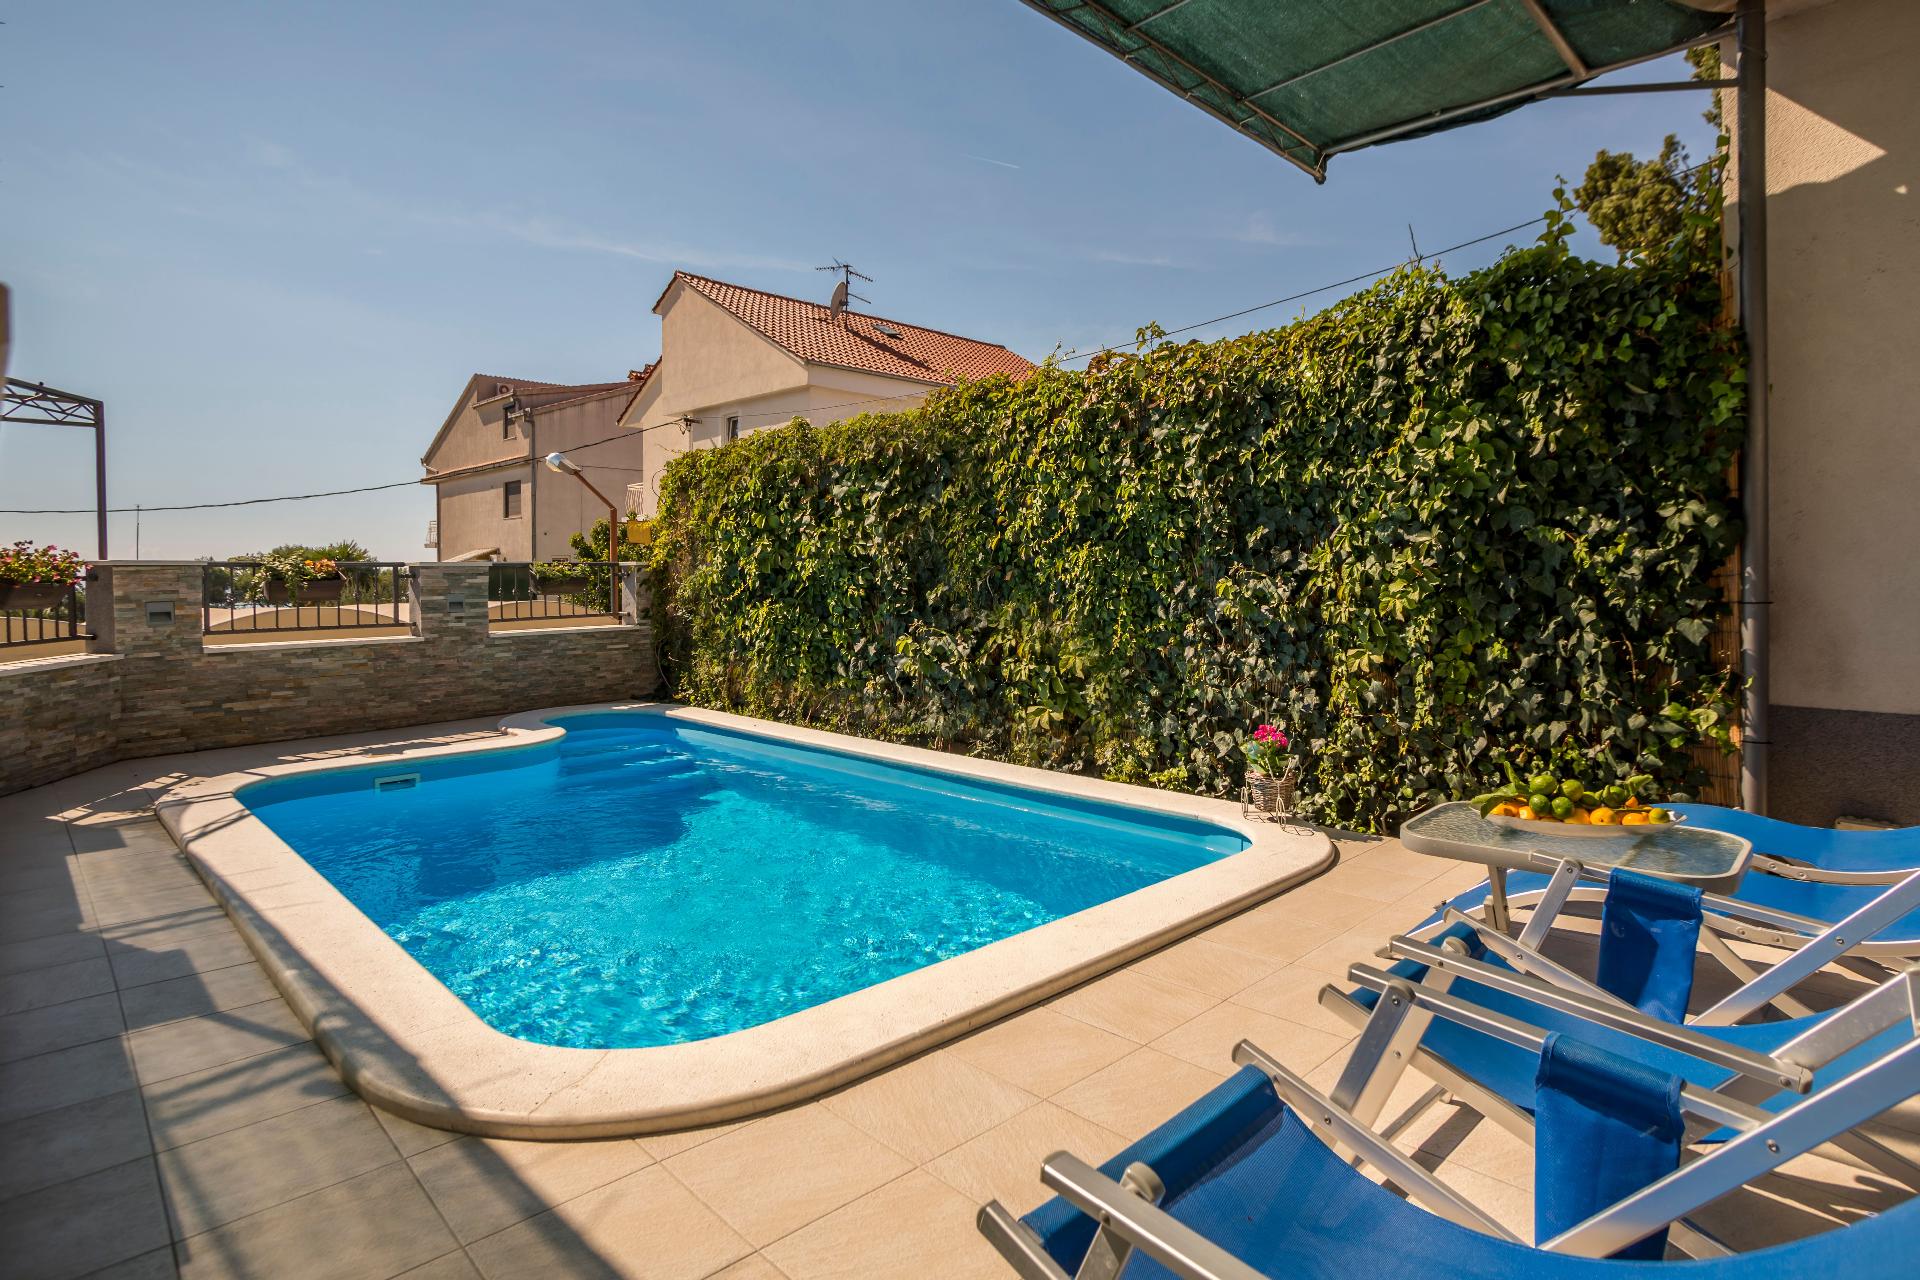 Ferienhaus mit privatem Pool sowie Terrasse mit Me Ferienhaus in Kroatien